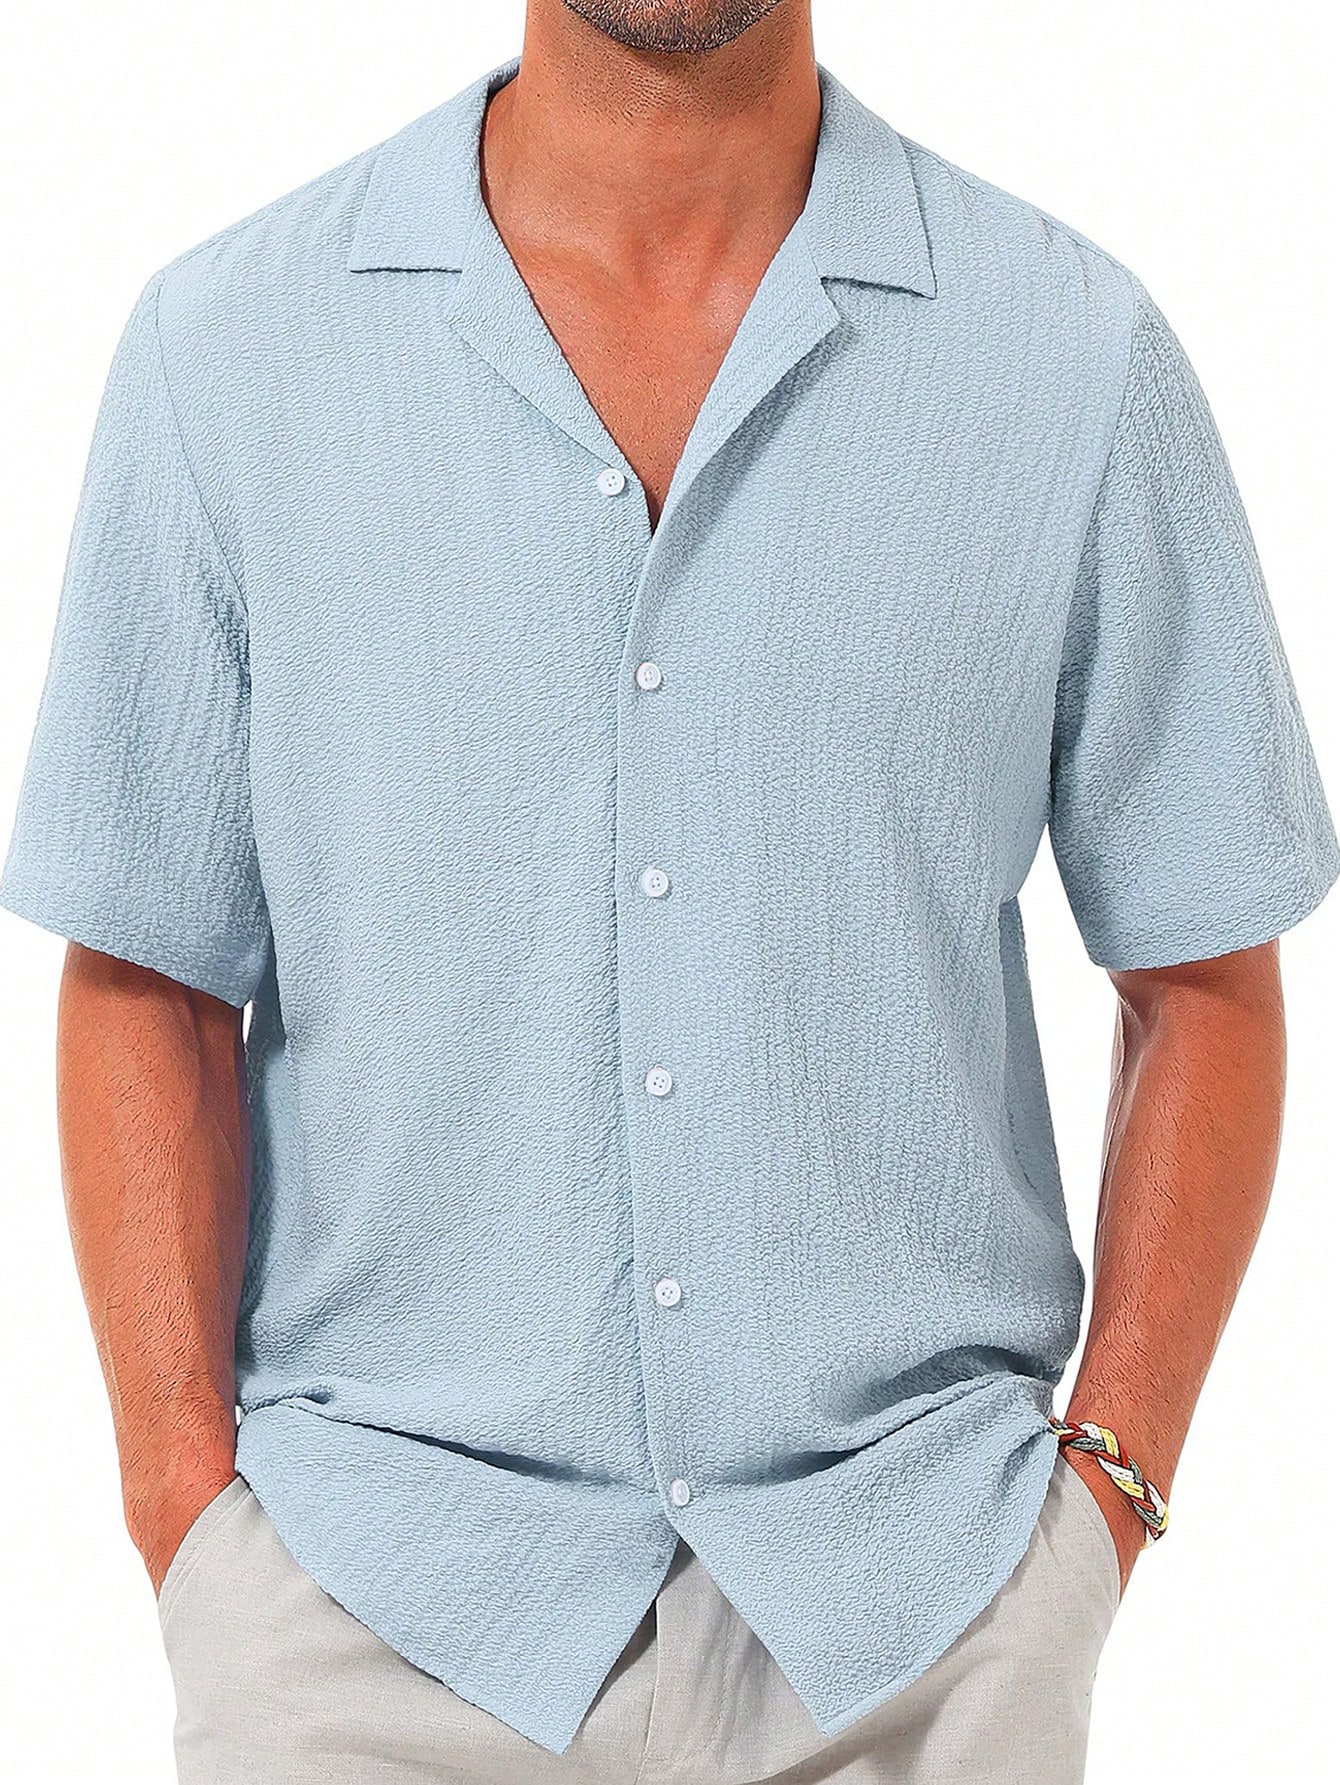 Мужская повседневная рубашка с коротким рукавом на пуговицах, синий рубашка мужская с коротким рукавом цифровым принтом на пуговицах повседневная домашняя одежда лето